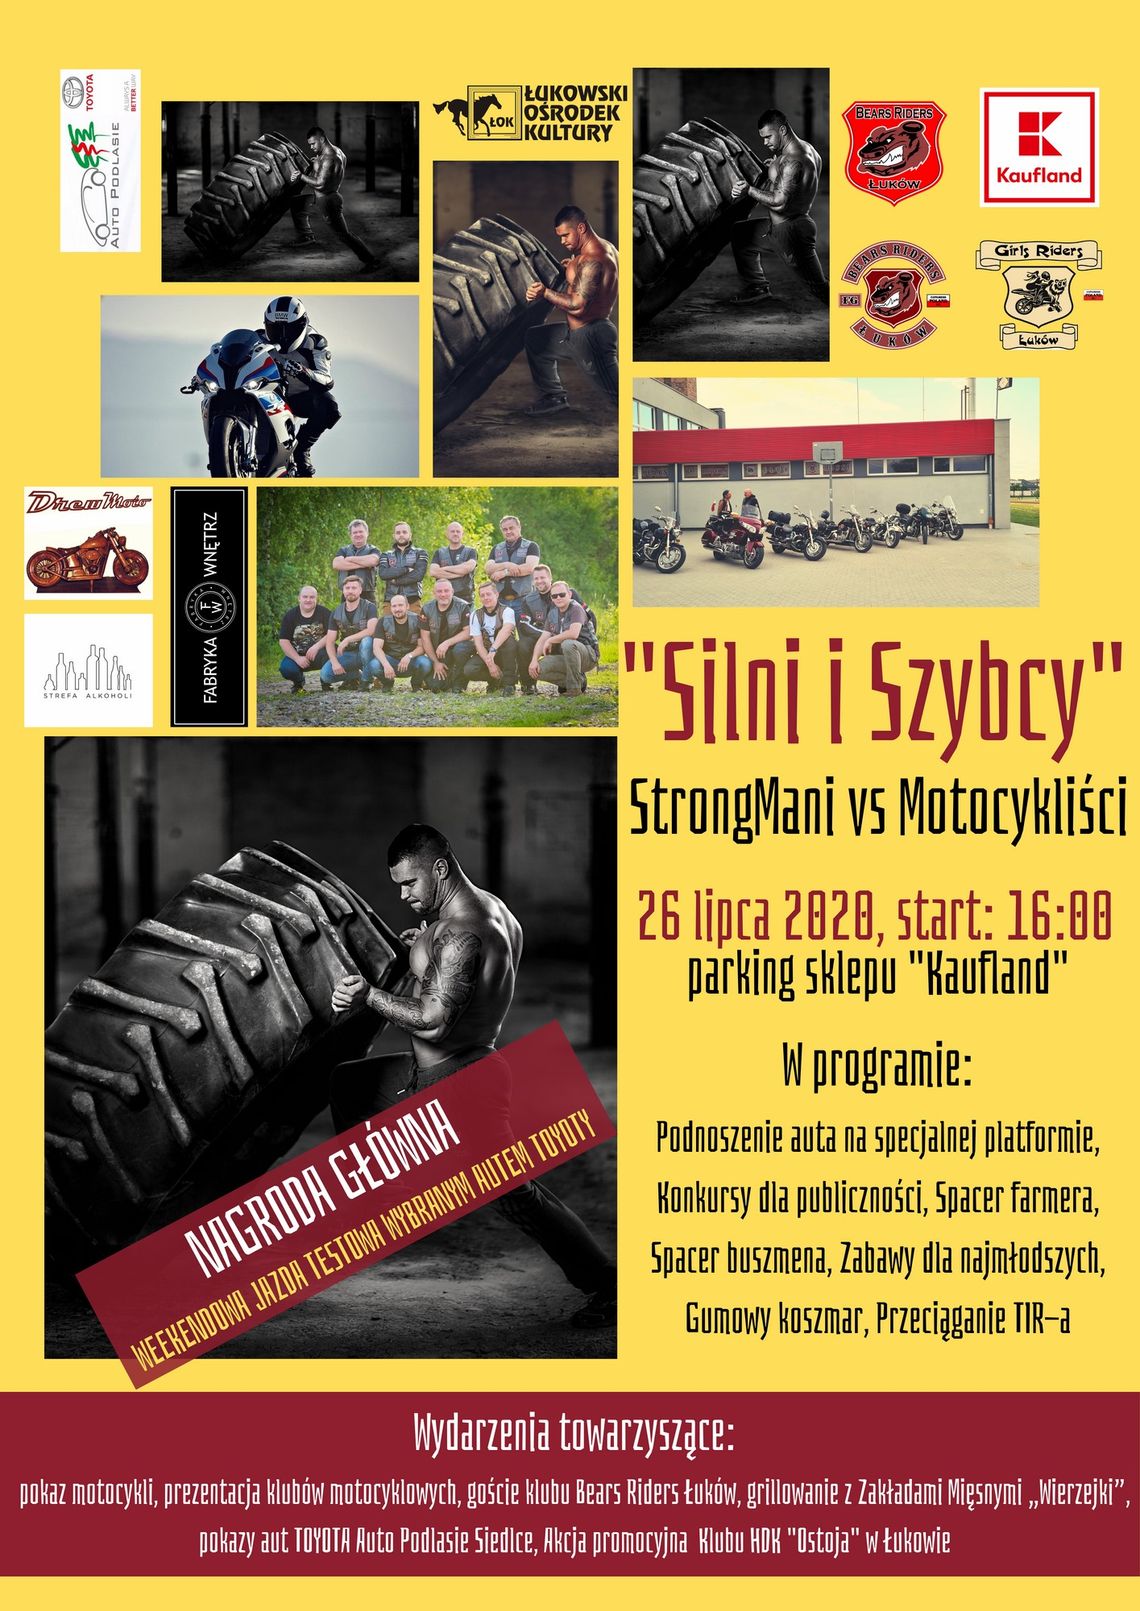 ”Silni i Szybcy” StrongMani vs Motocykliści /26 lipca 2020 16:00